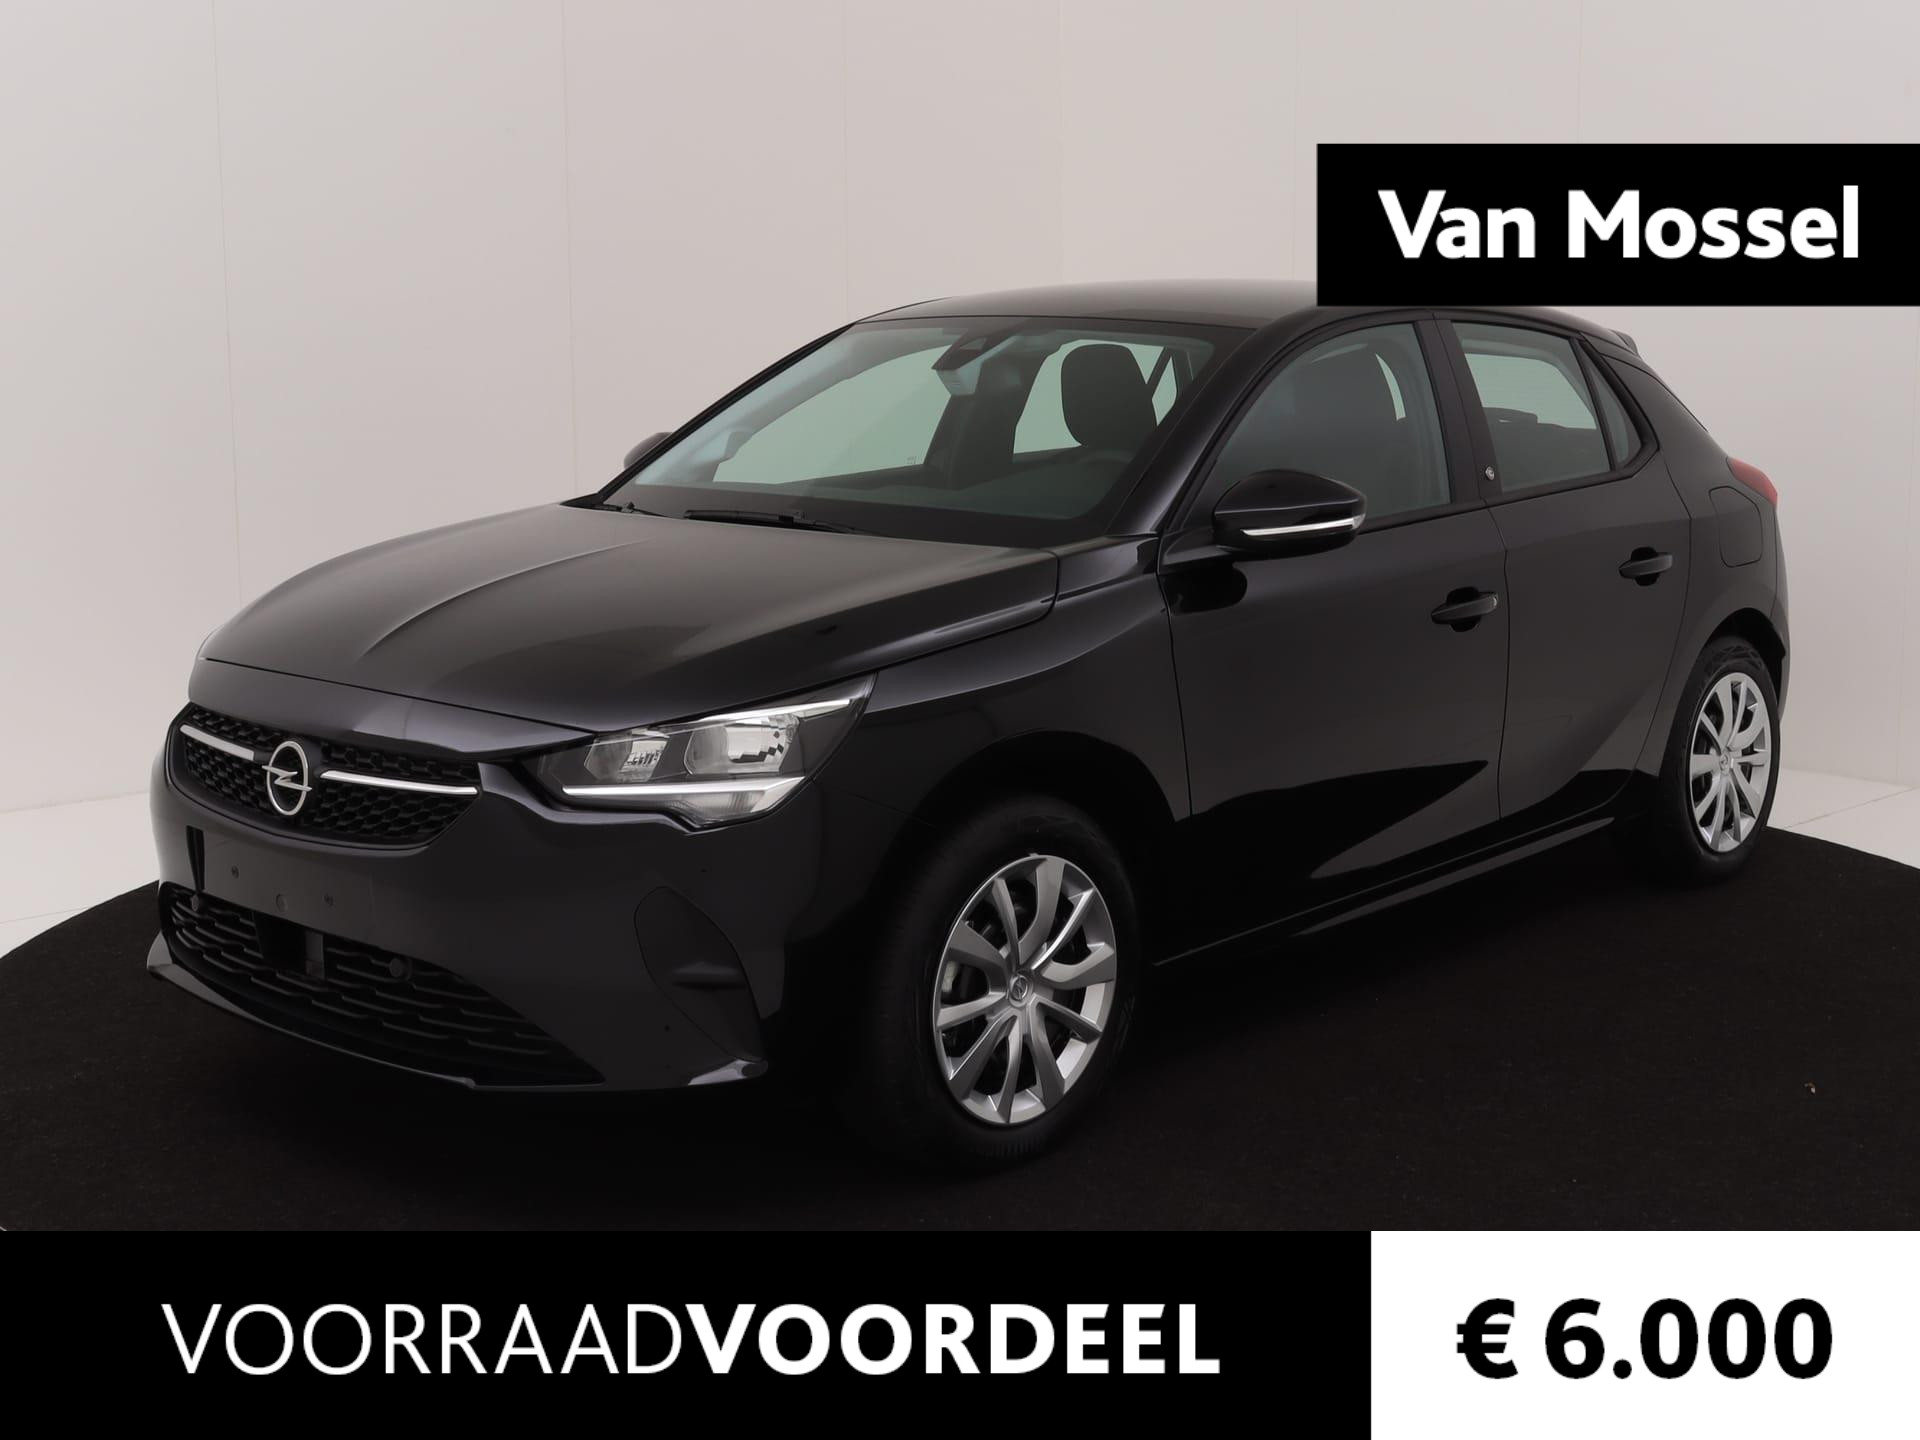 Opel Corsa-e Level 2 50 kWh || VAN MOSSEL VOORRAADVOORDEEL ||